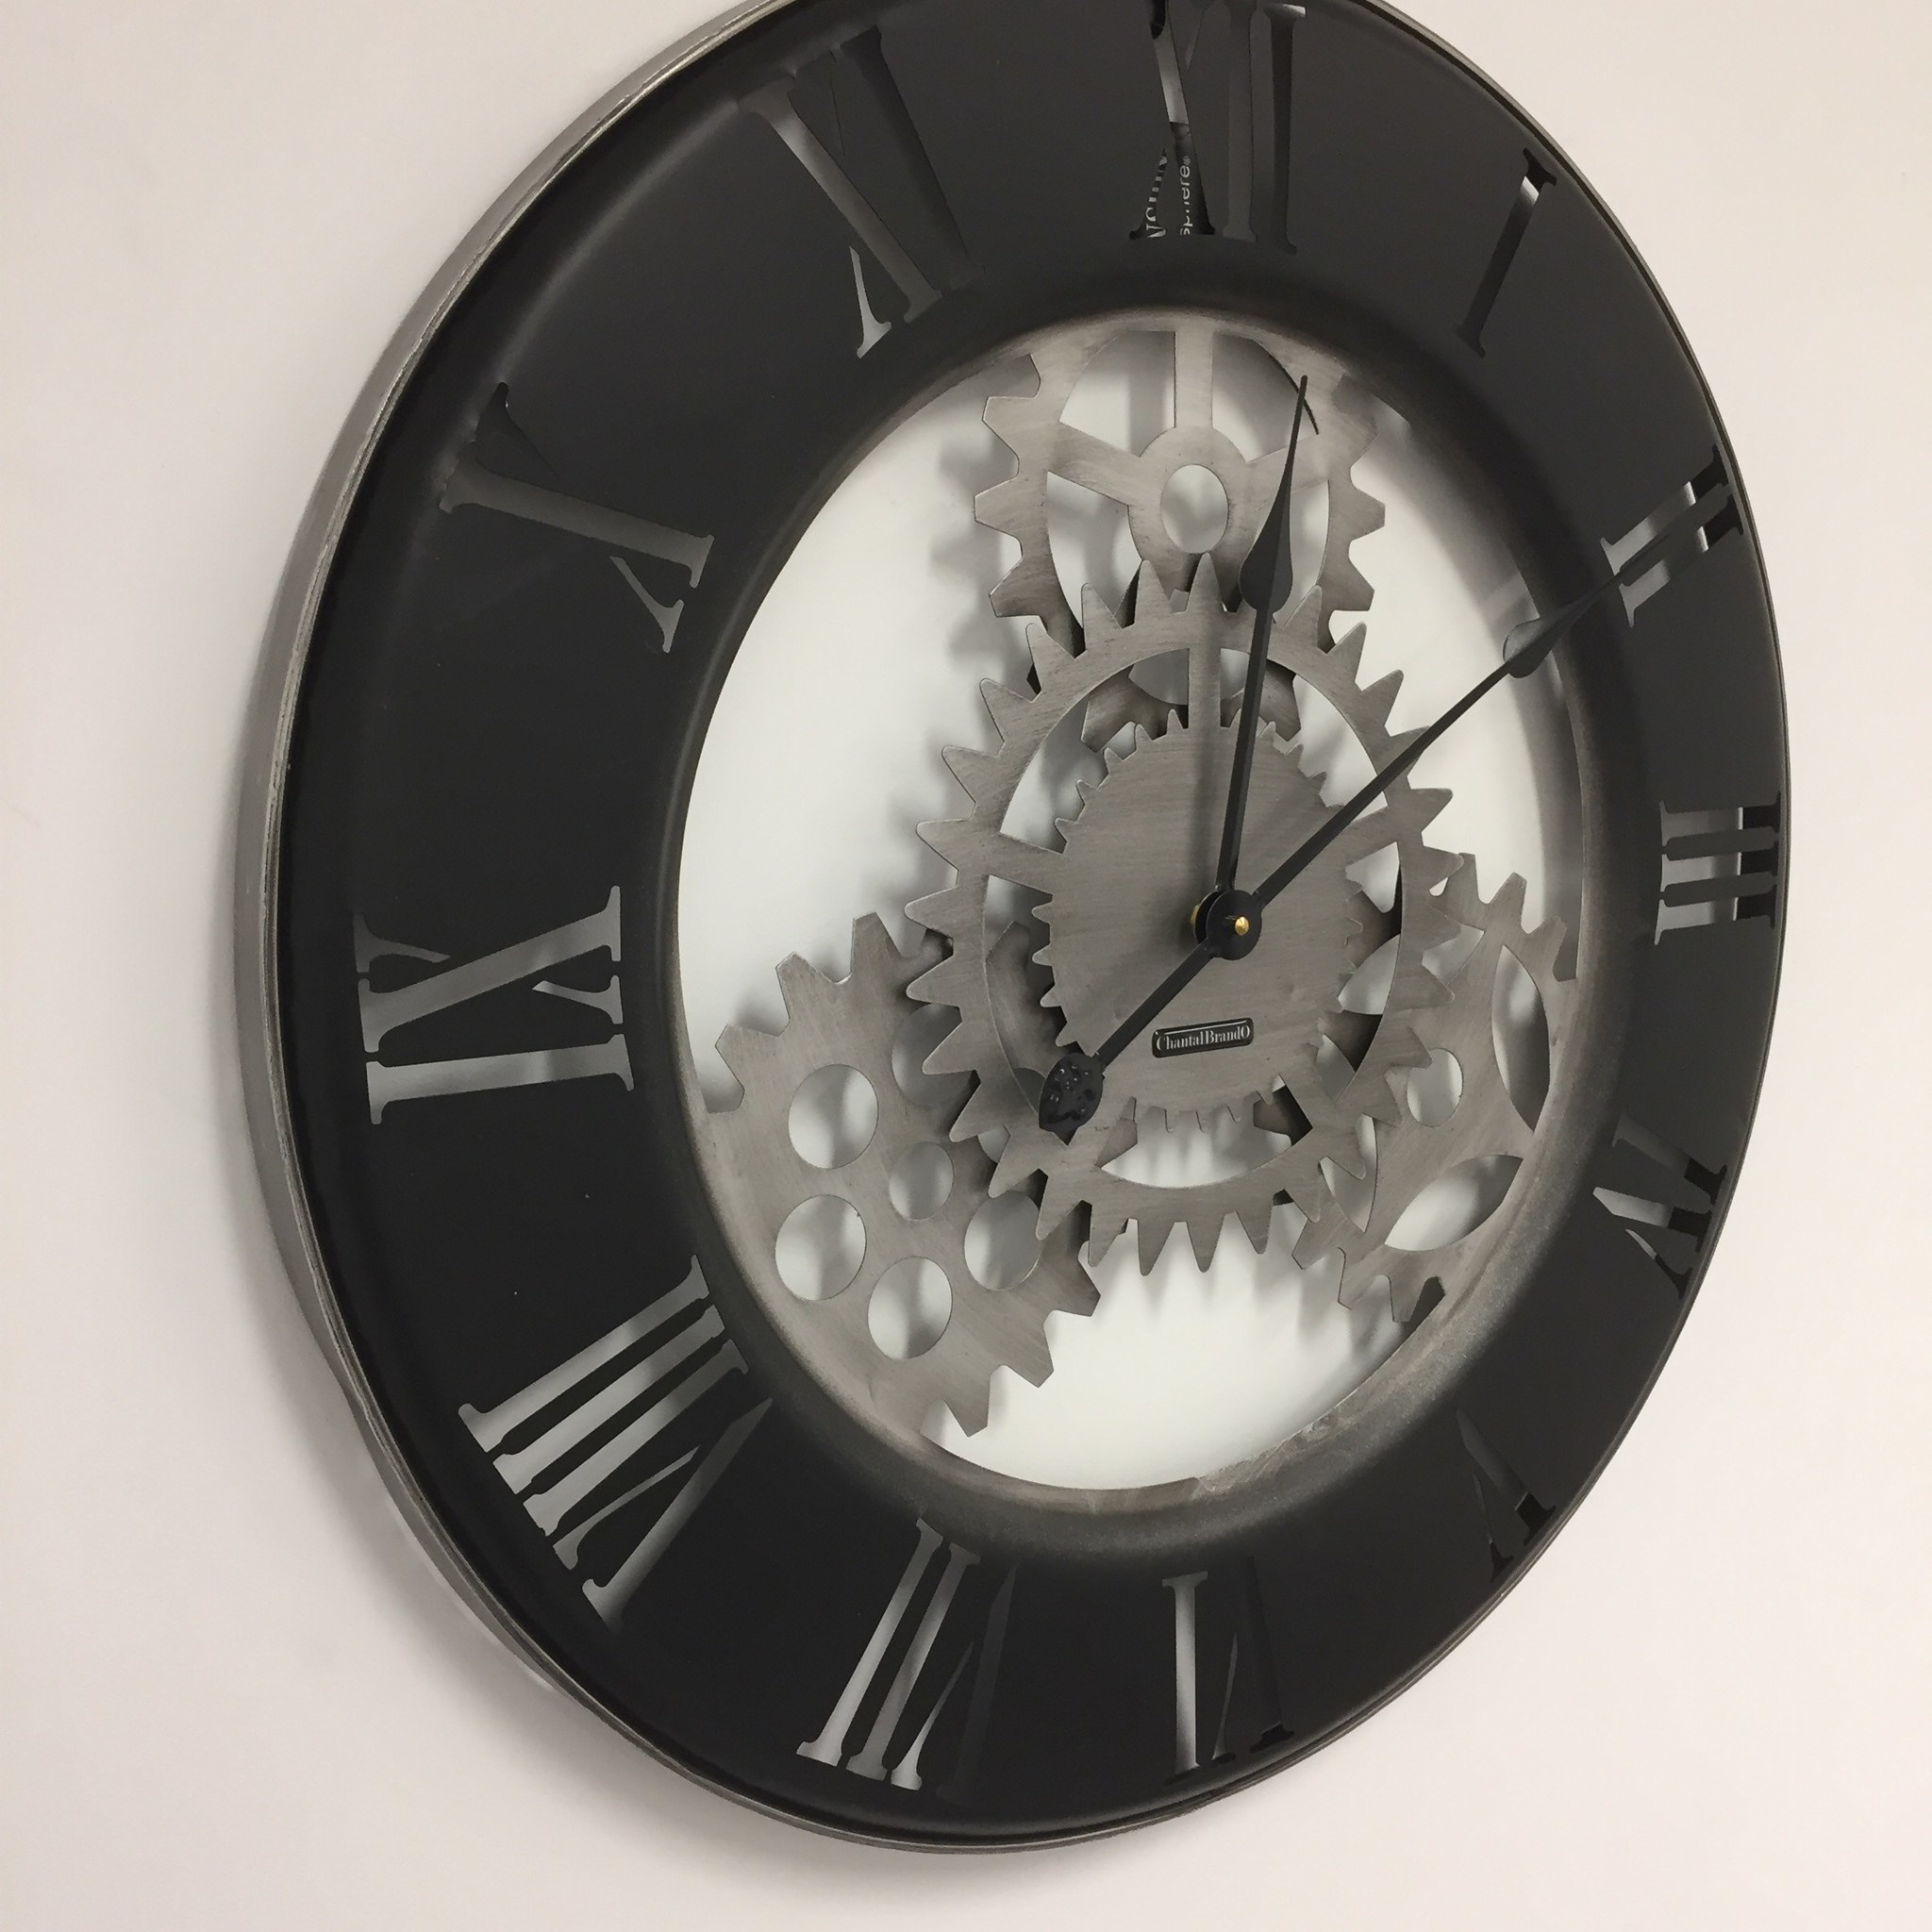 Klokkendiscounter Design - Wall clock Industrial Vintage Design